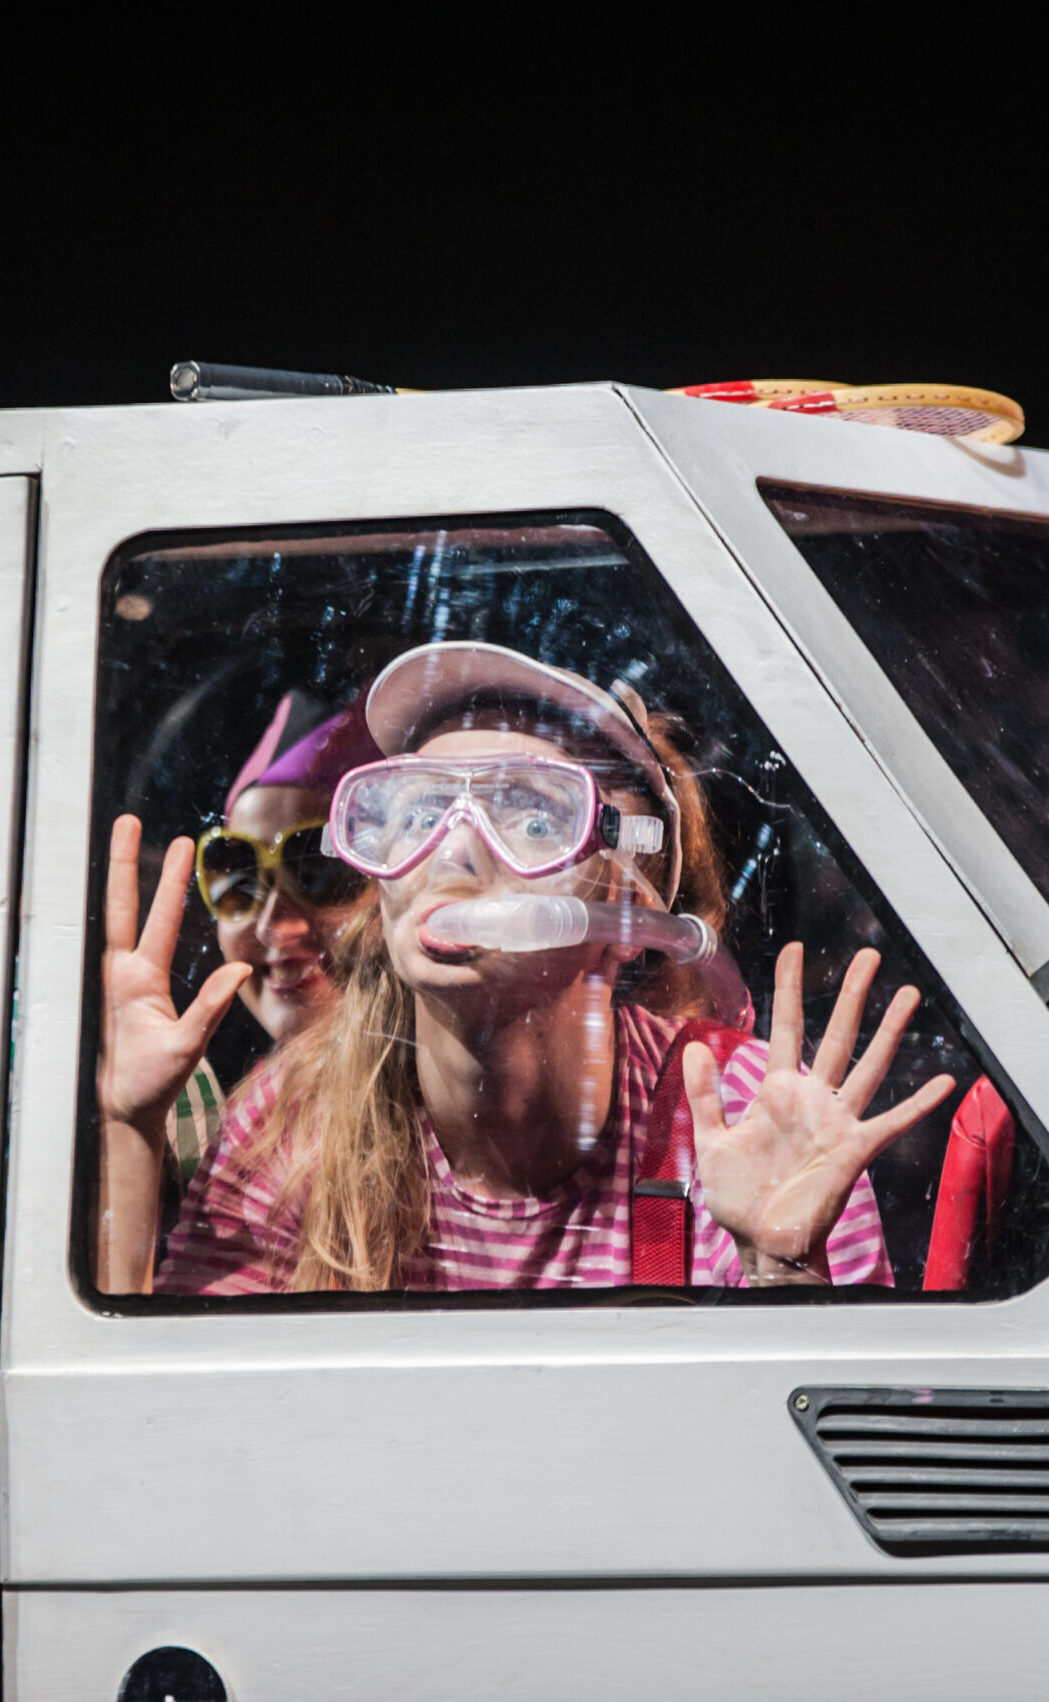 Zdjęcie ze spektaklu Ja, Maluch i morze. Mała dziewczynka siedząca w samochodzie ma na sobie okulary do nurkowania i maskę tlenową. Przyklejona jest do szyby.